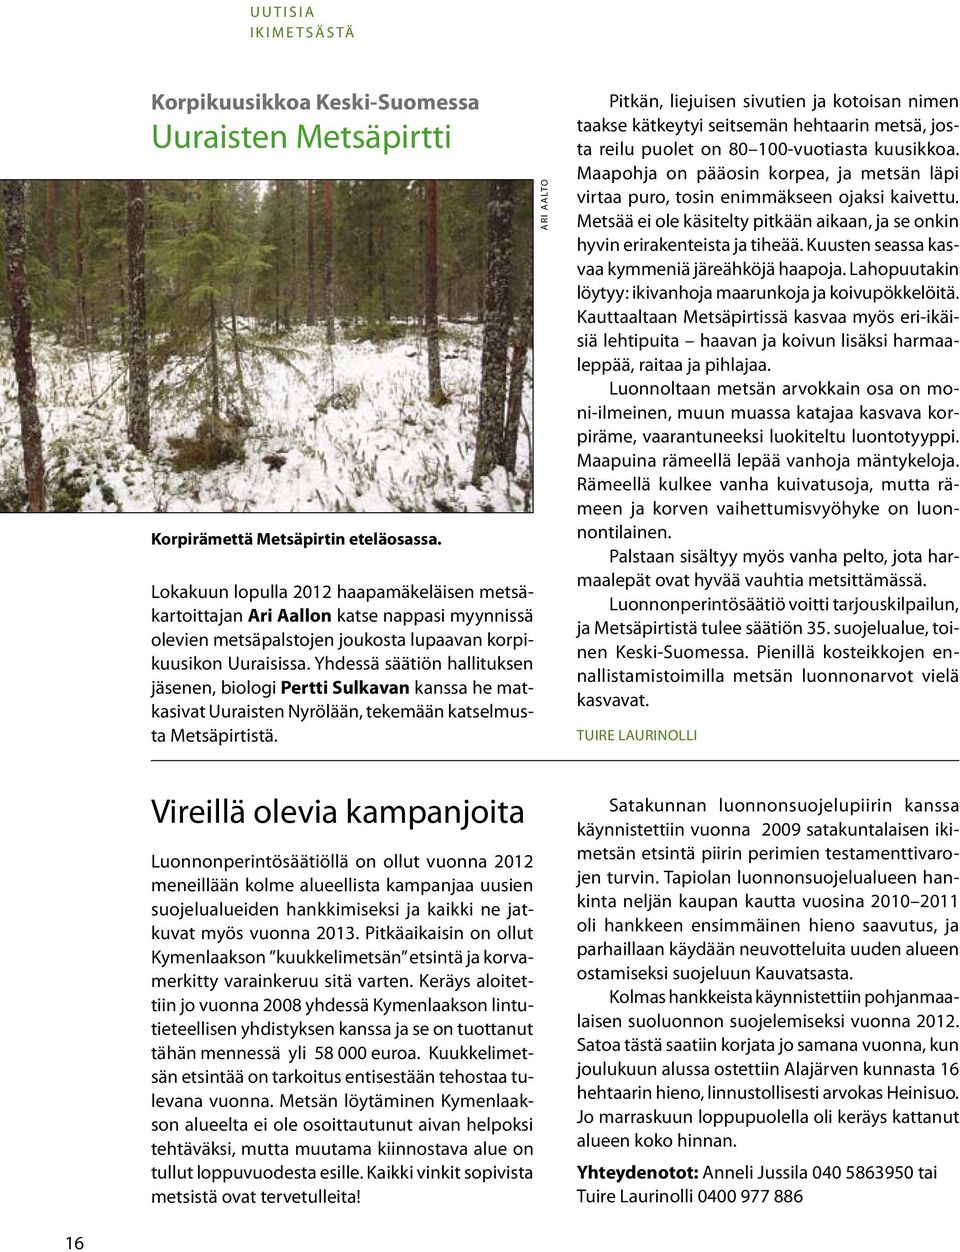 Yhdessä säätiön hallituksen jäsenen, biologi Pertti Sulkavan kanssa he matkasivat Uuraisten Nyrölään, tekemään katselmusta Metsäpirtistä.